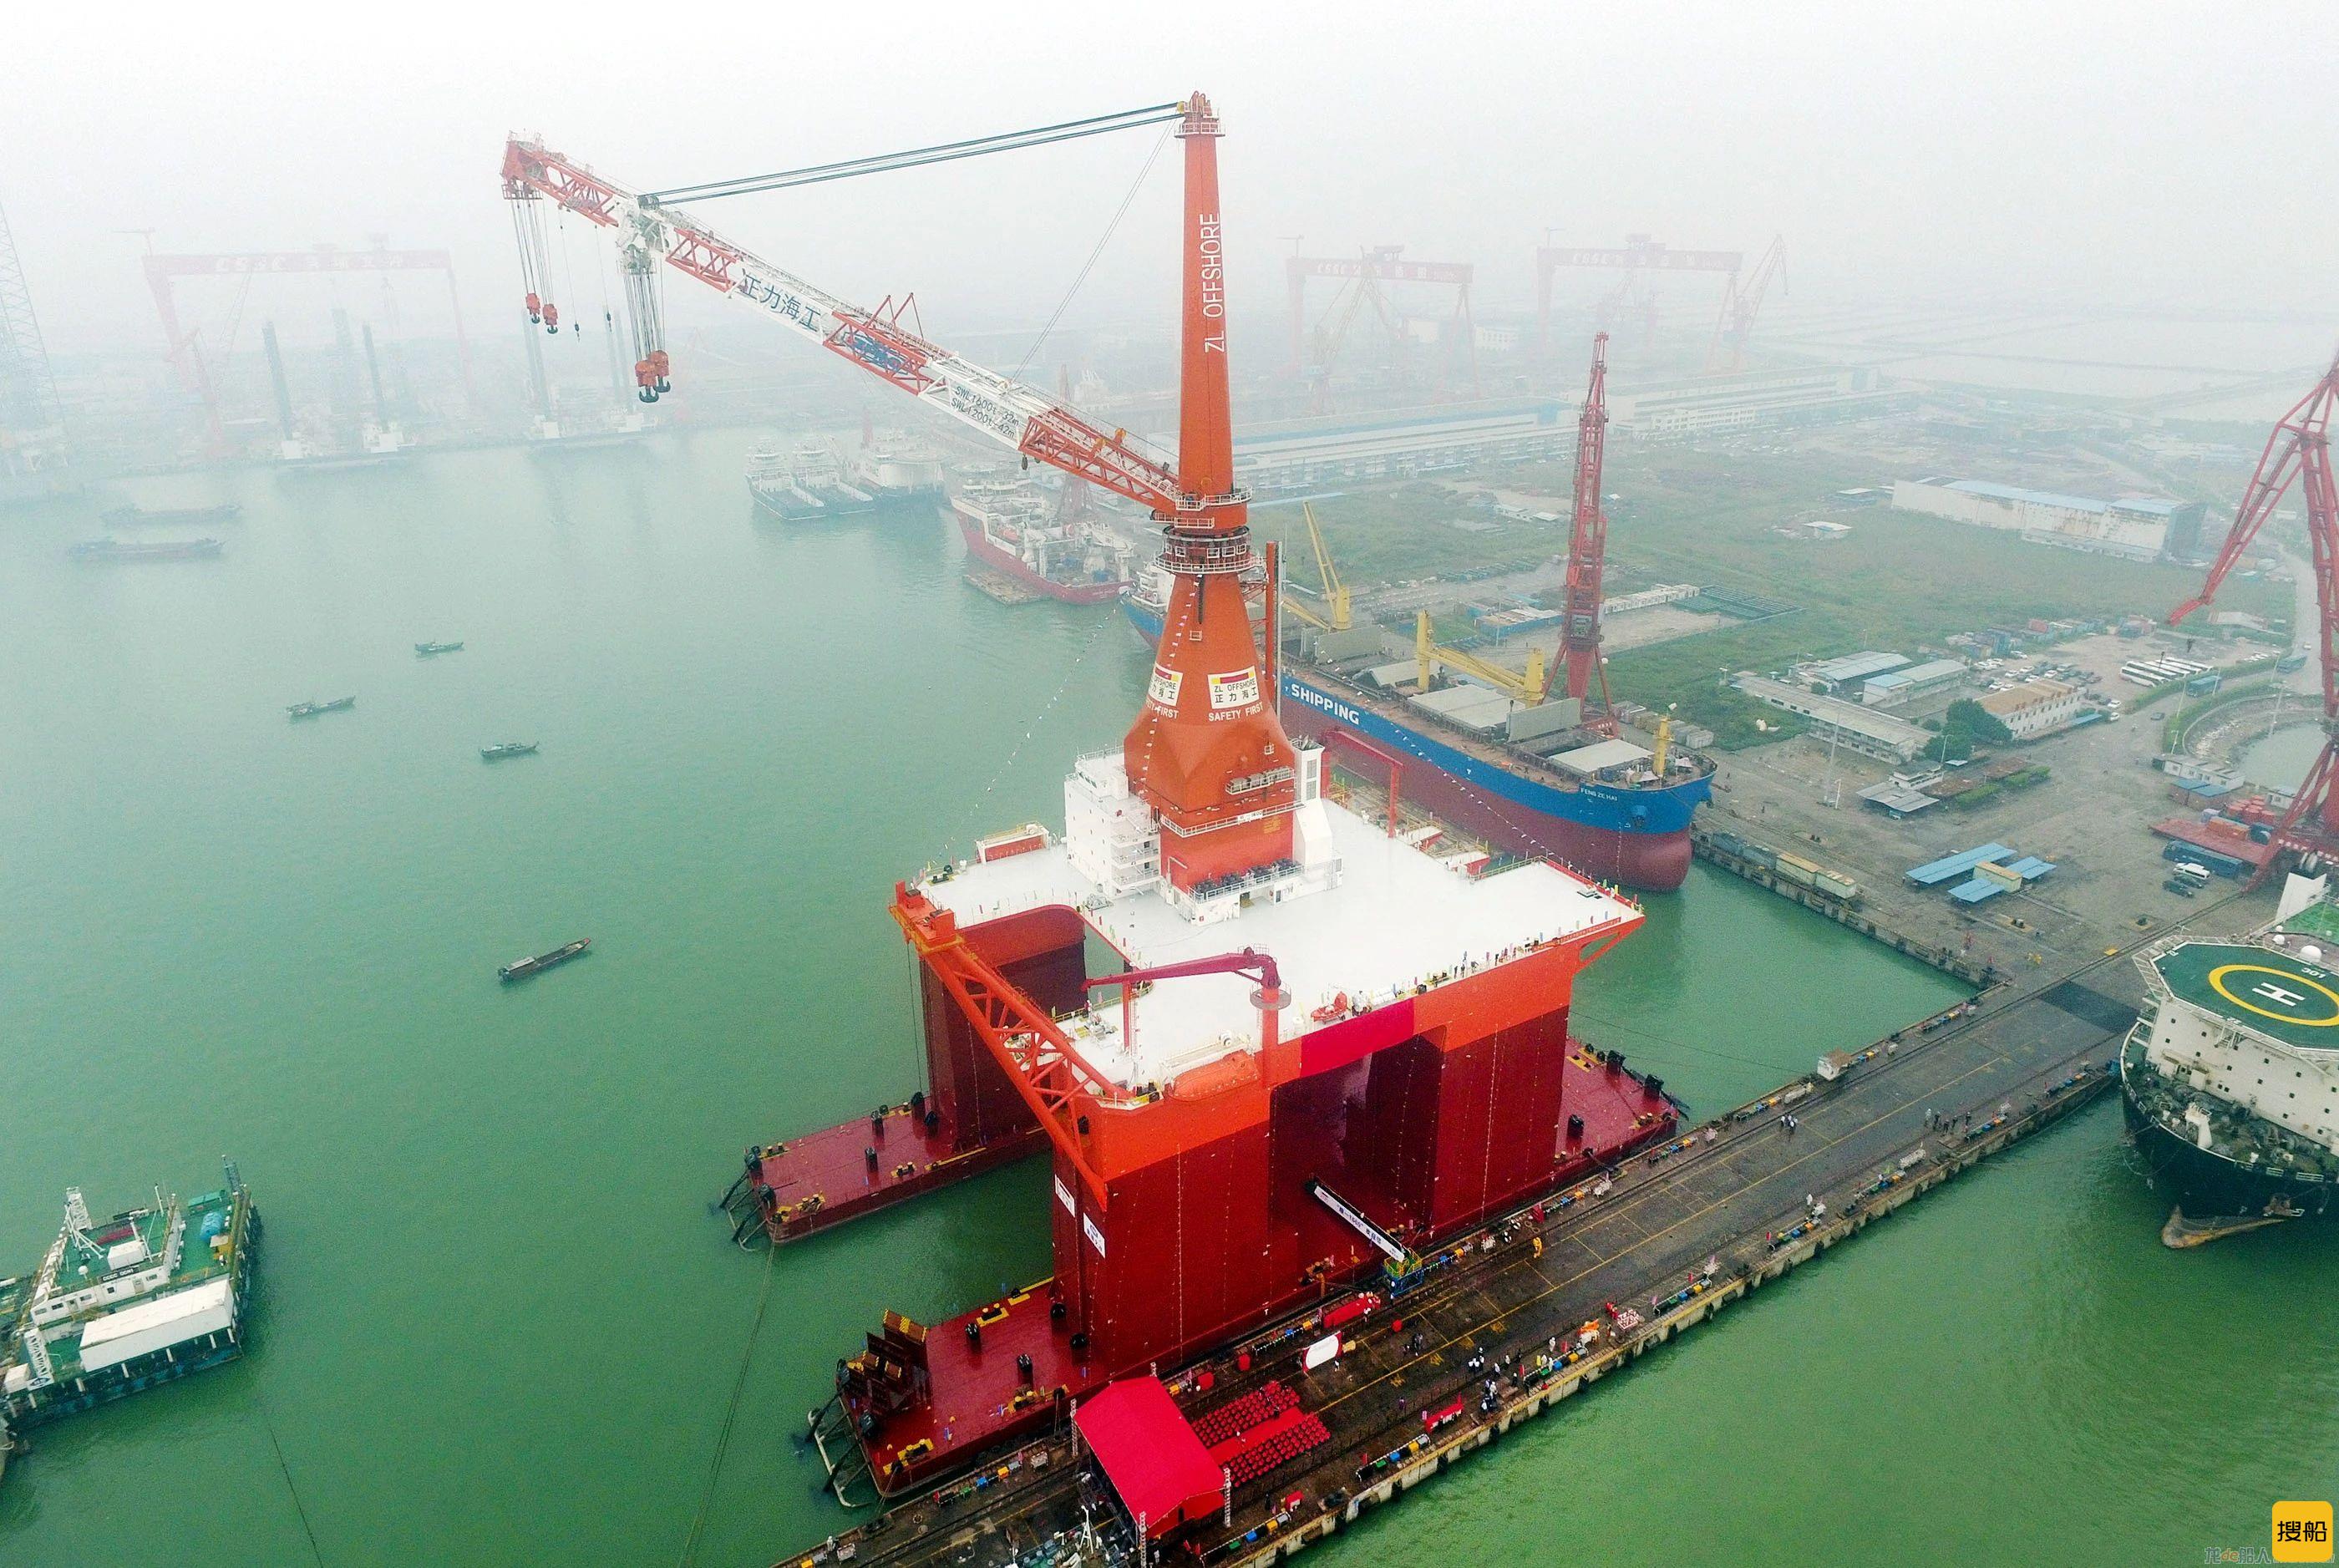 中国船舶四家船厂四型船舶获制造业单项冠军